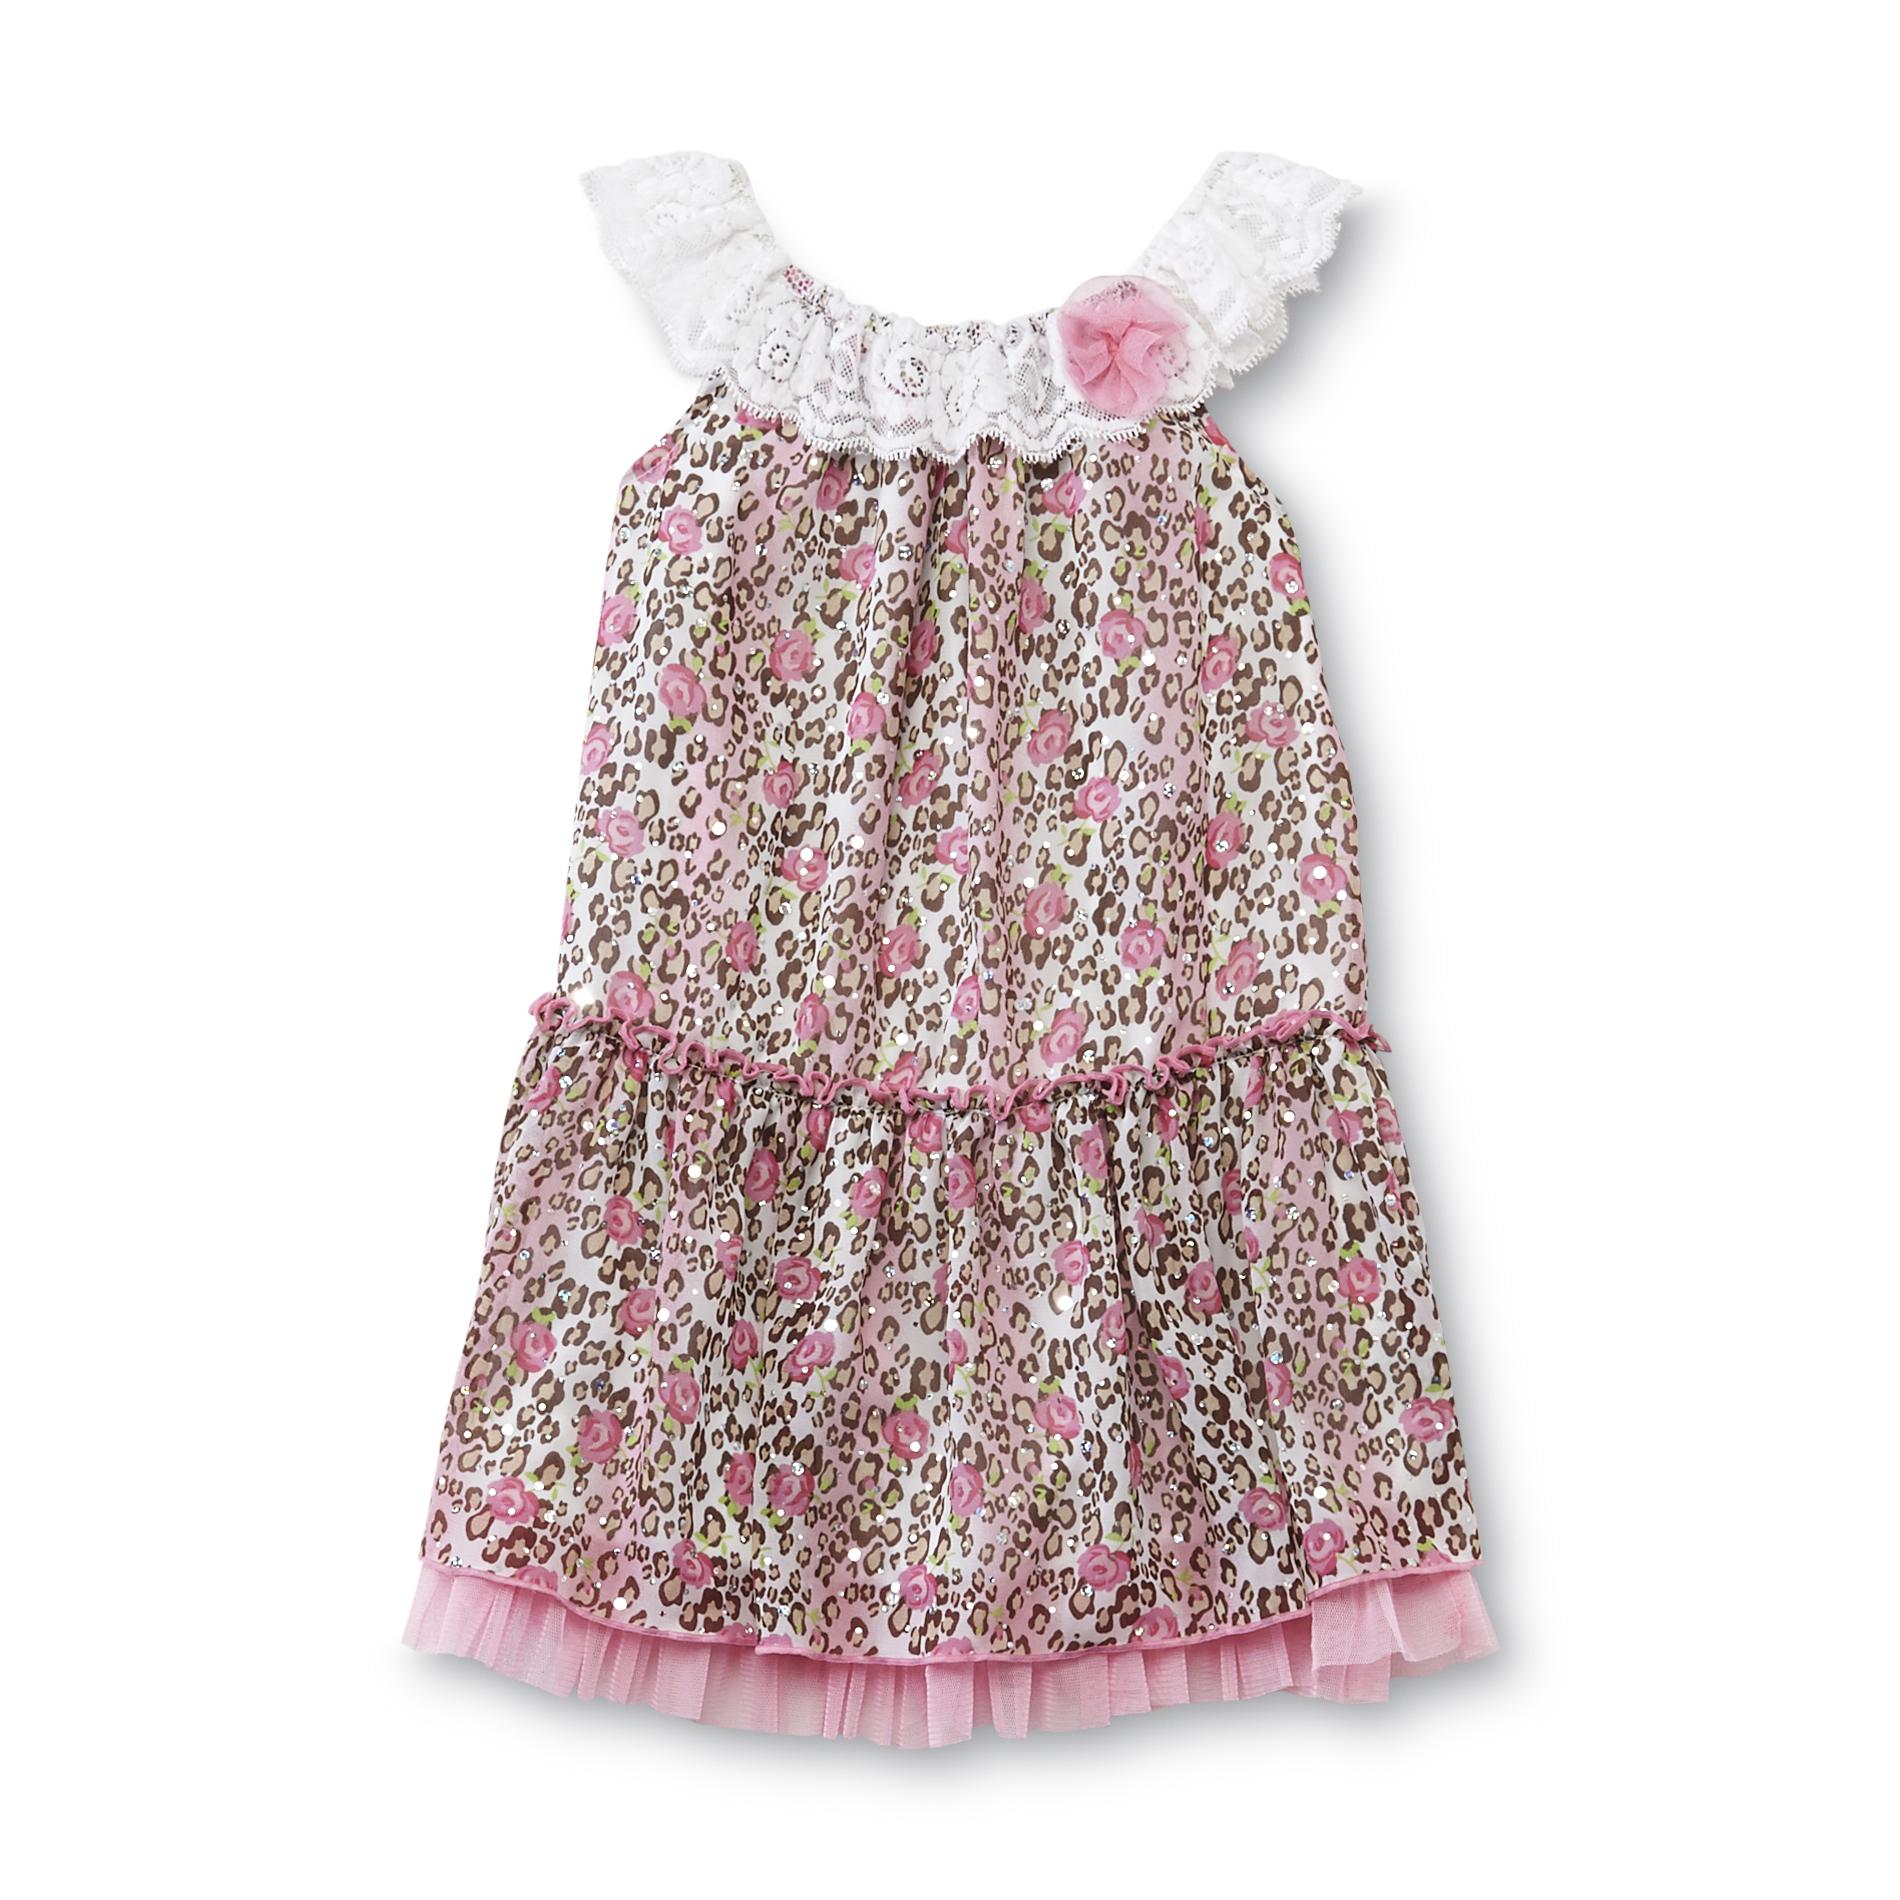 WonderKids Toddler Girl's Sleeveless Dress - Rose & Leopard Print